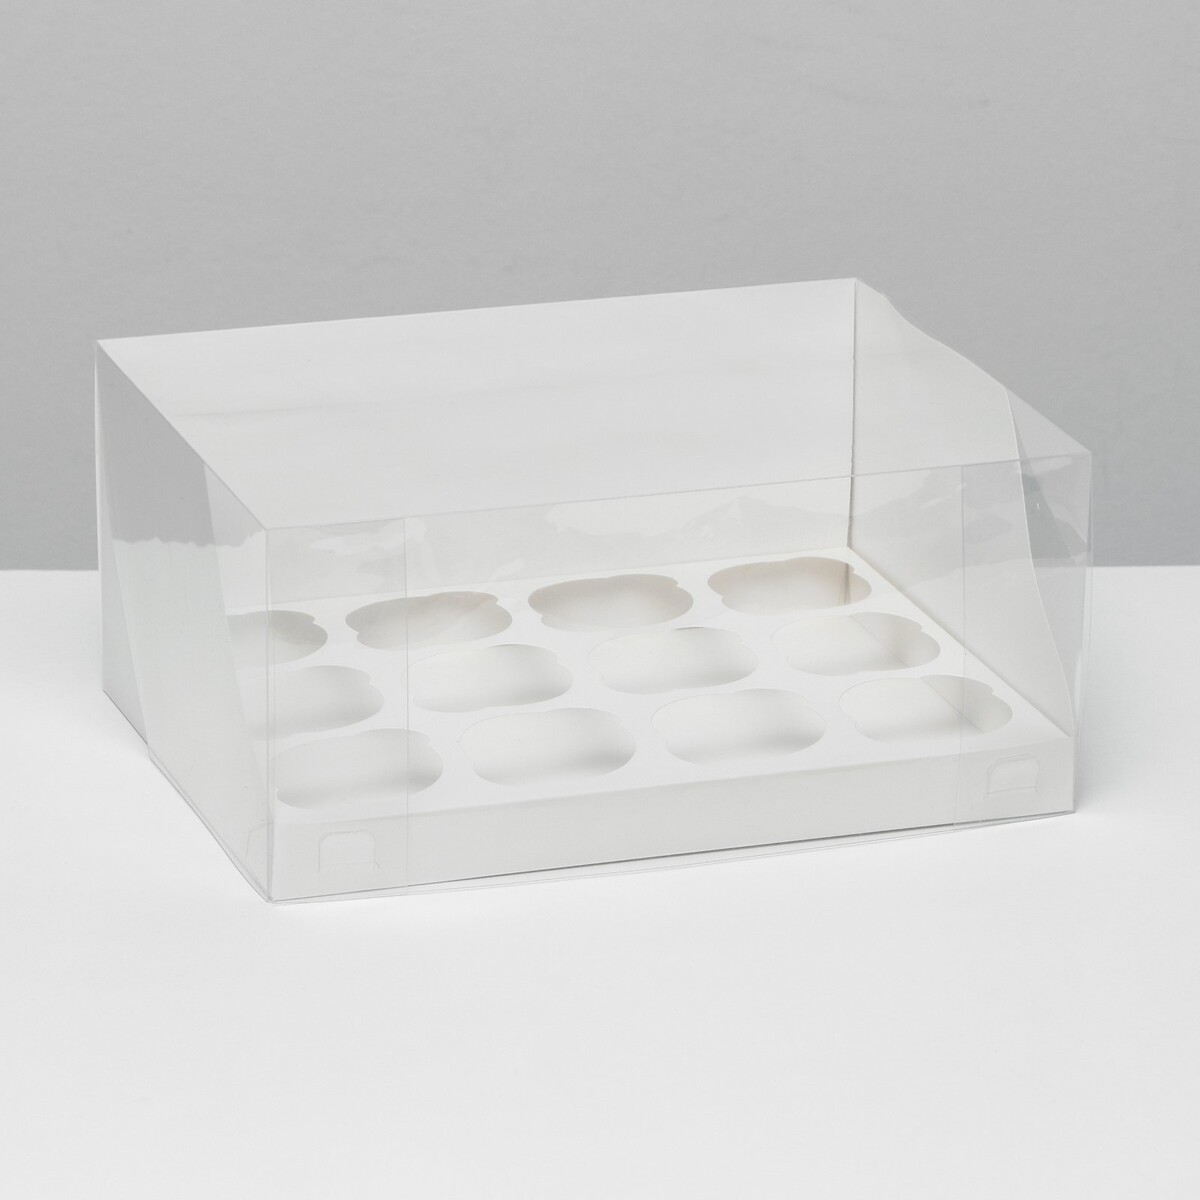 Кондитерская складная коробка для 12 капкейков белая, 31 x 24 x 14 см